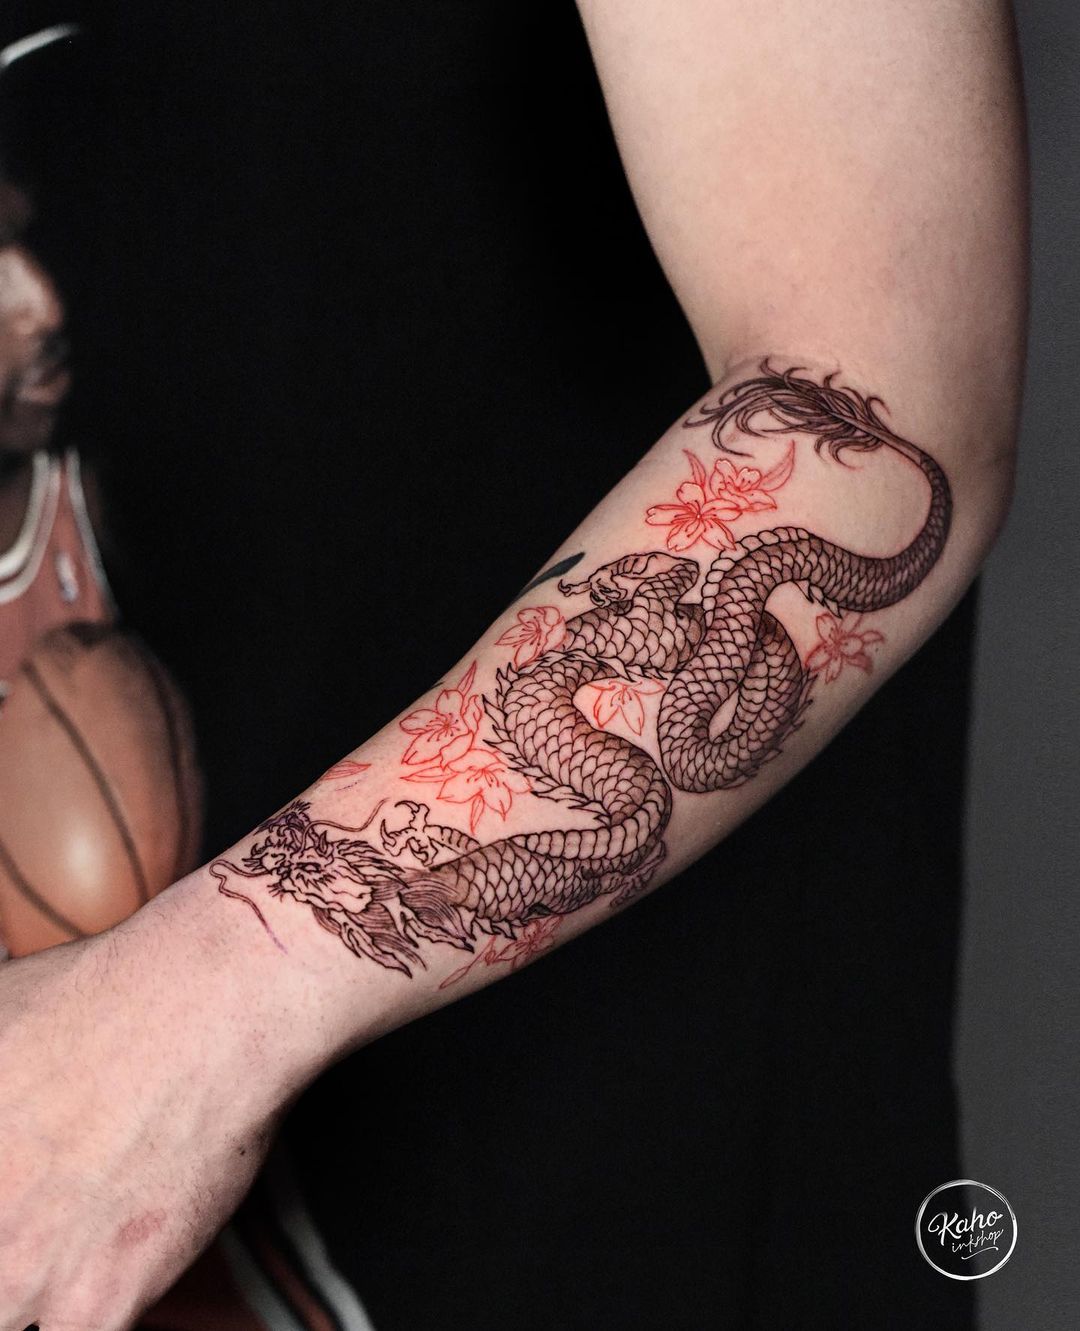 Dragon tattoo on arm by kahoinkshop